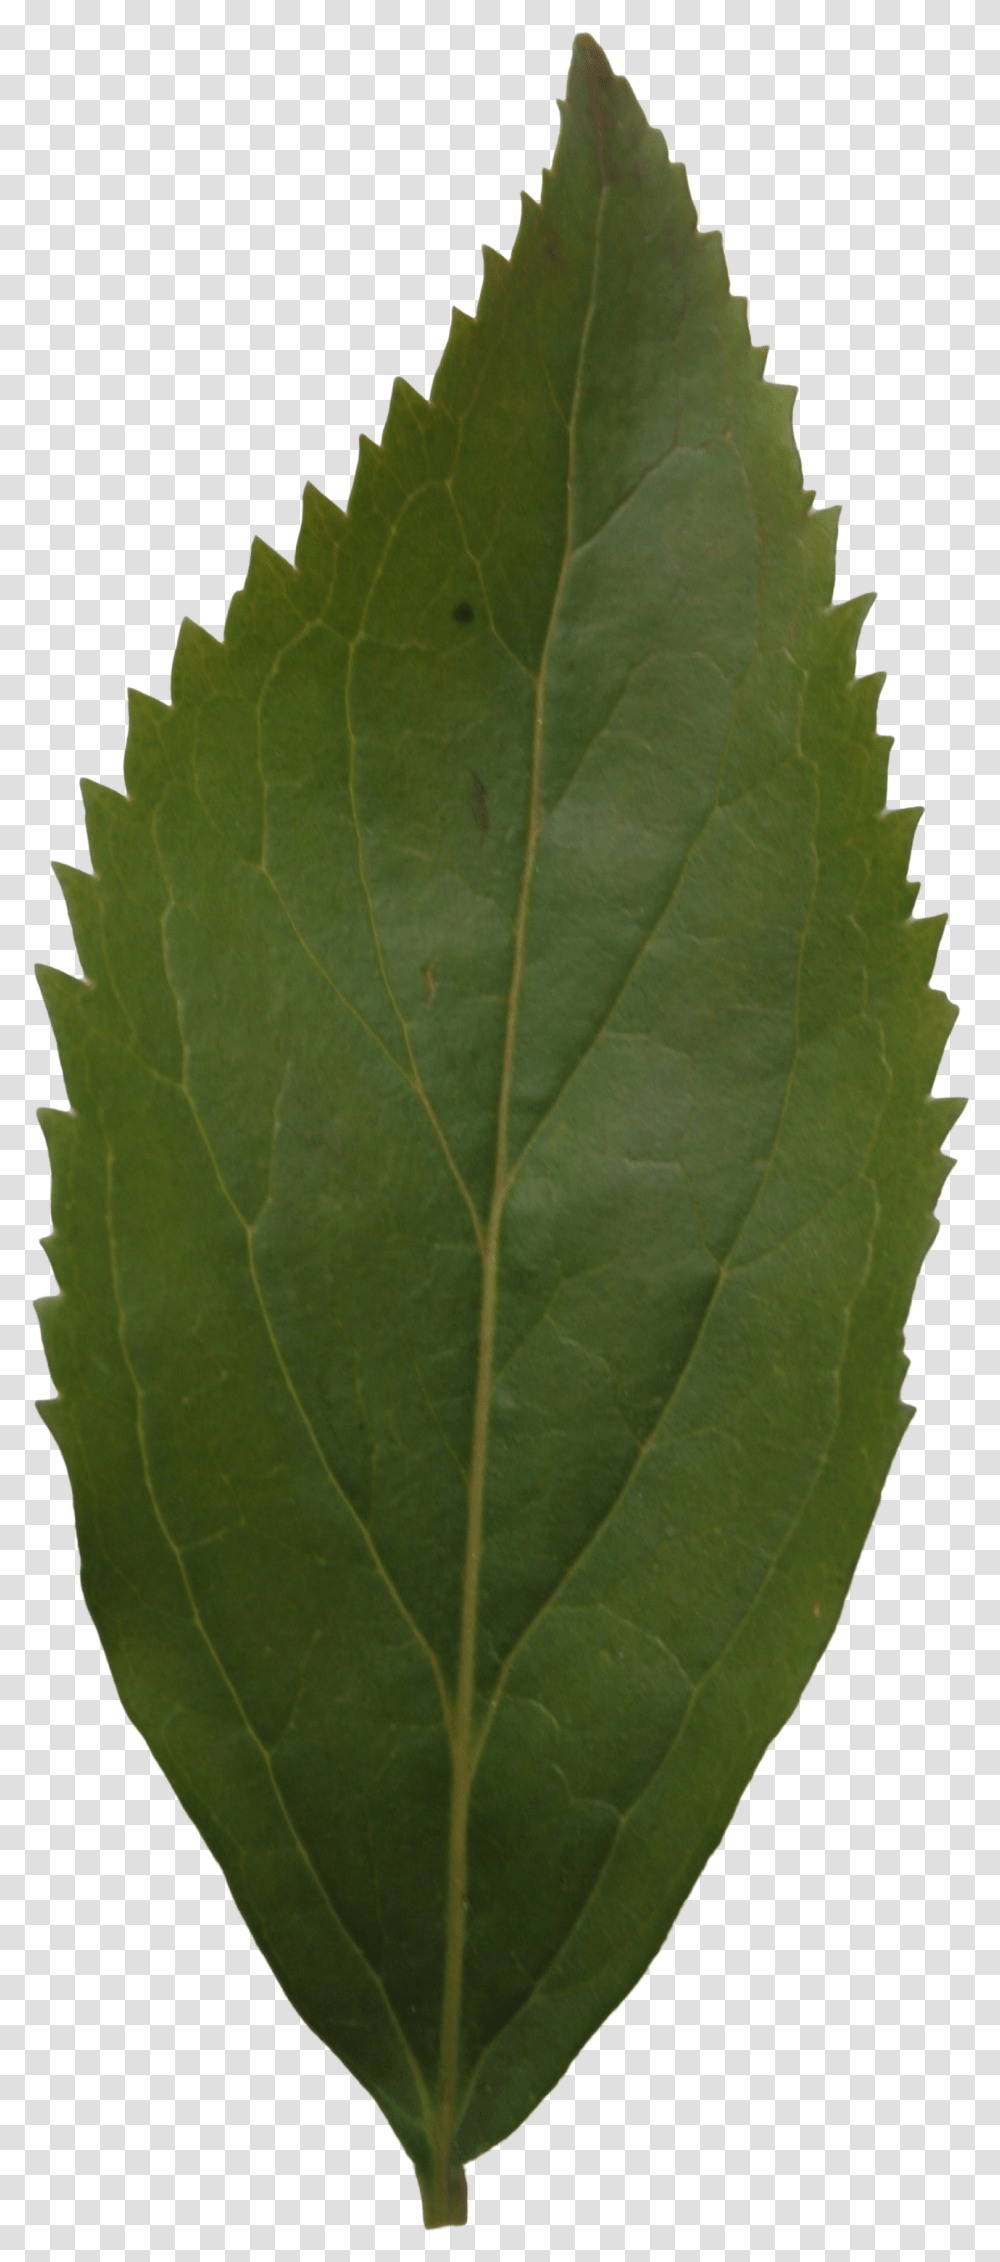 Leaf, Plant, Veins, Pineapple, Fruit Transparent Png